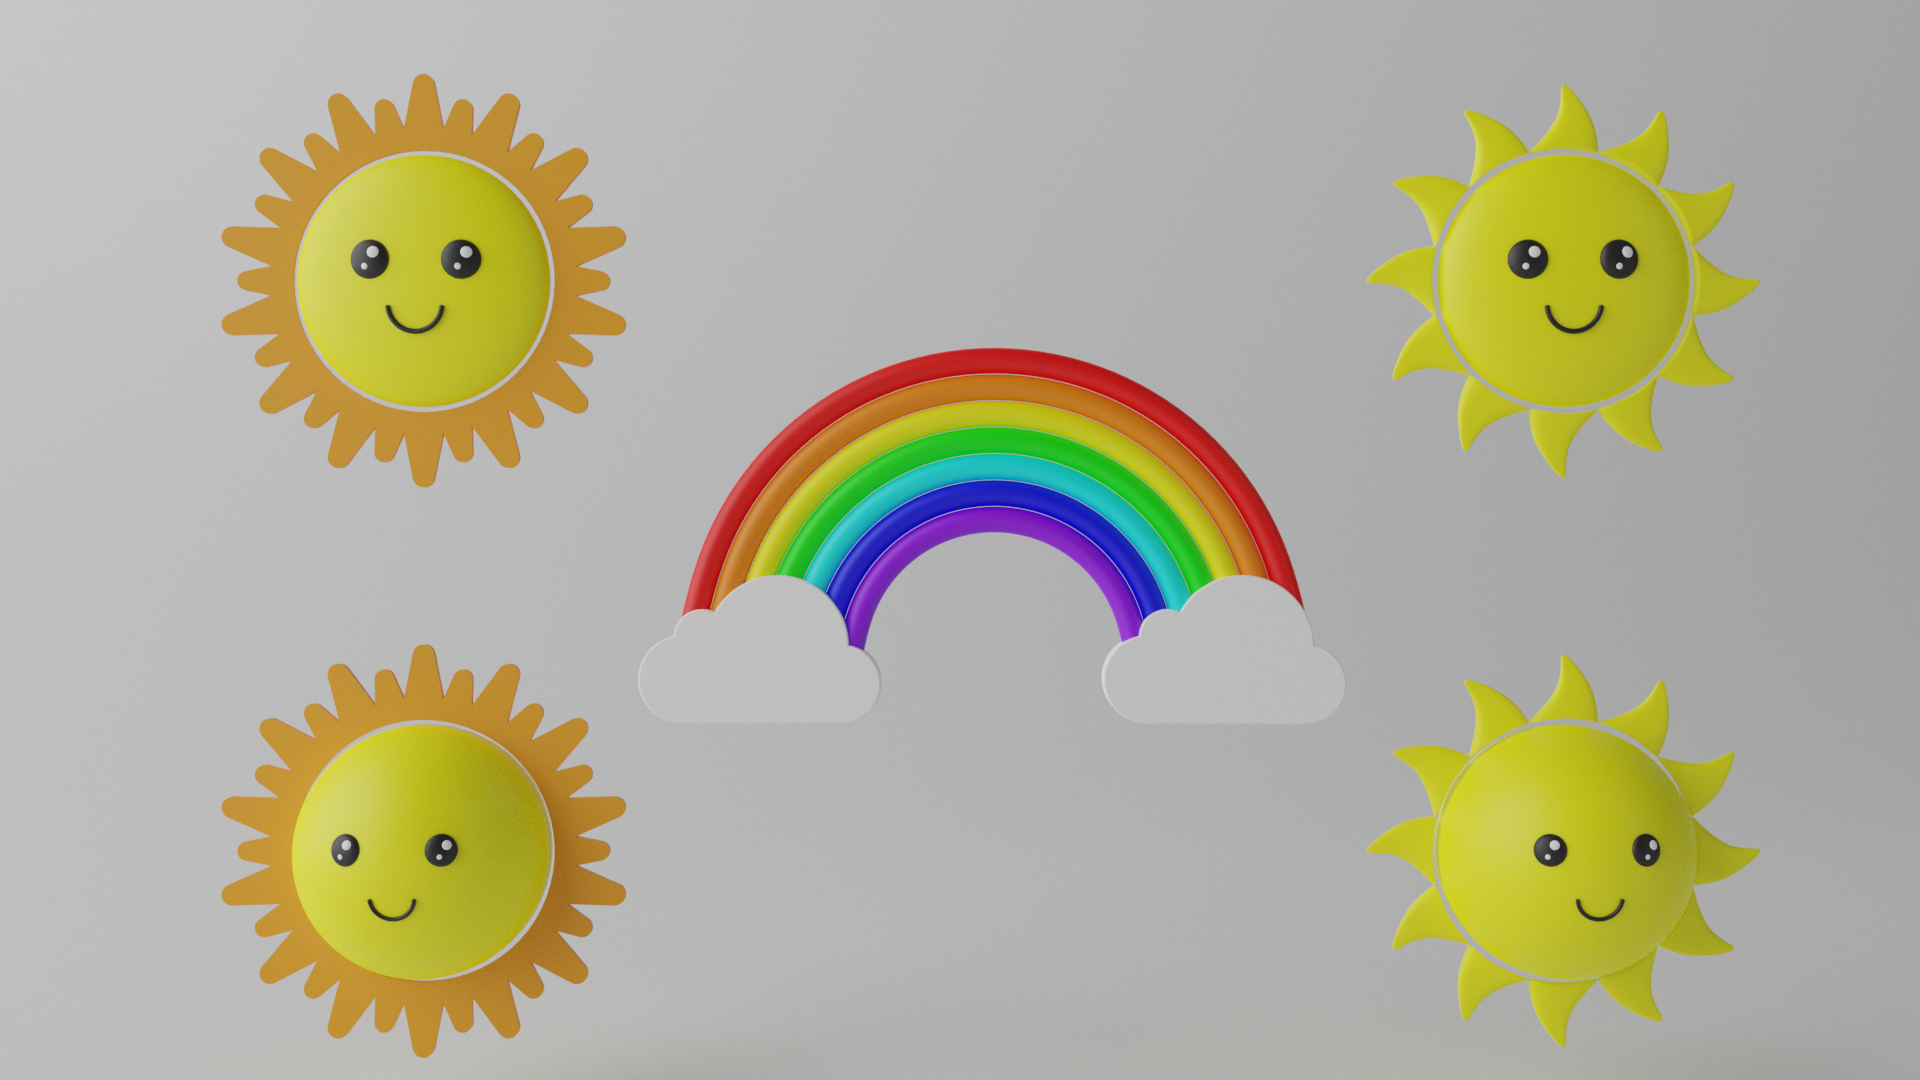 sun and rainbow clipart